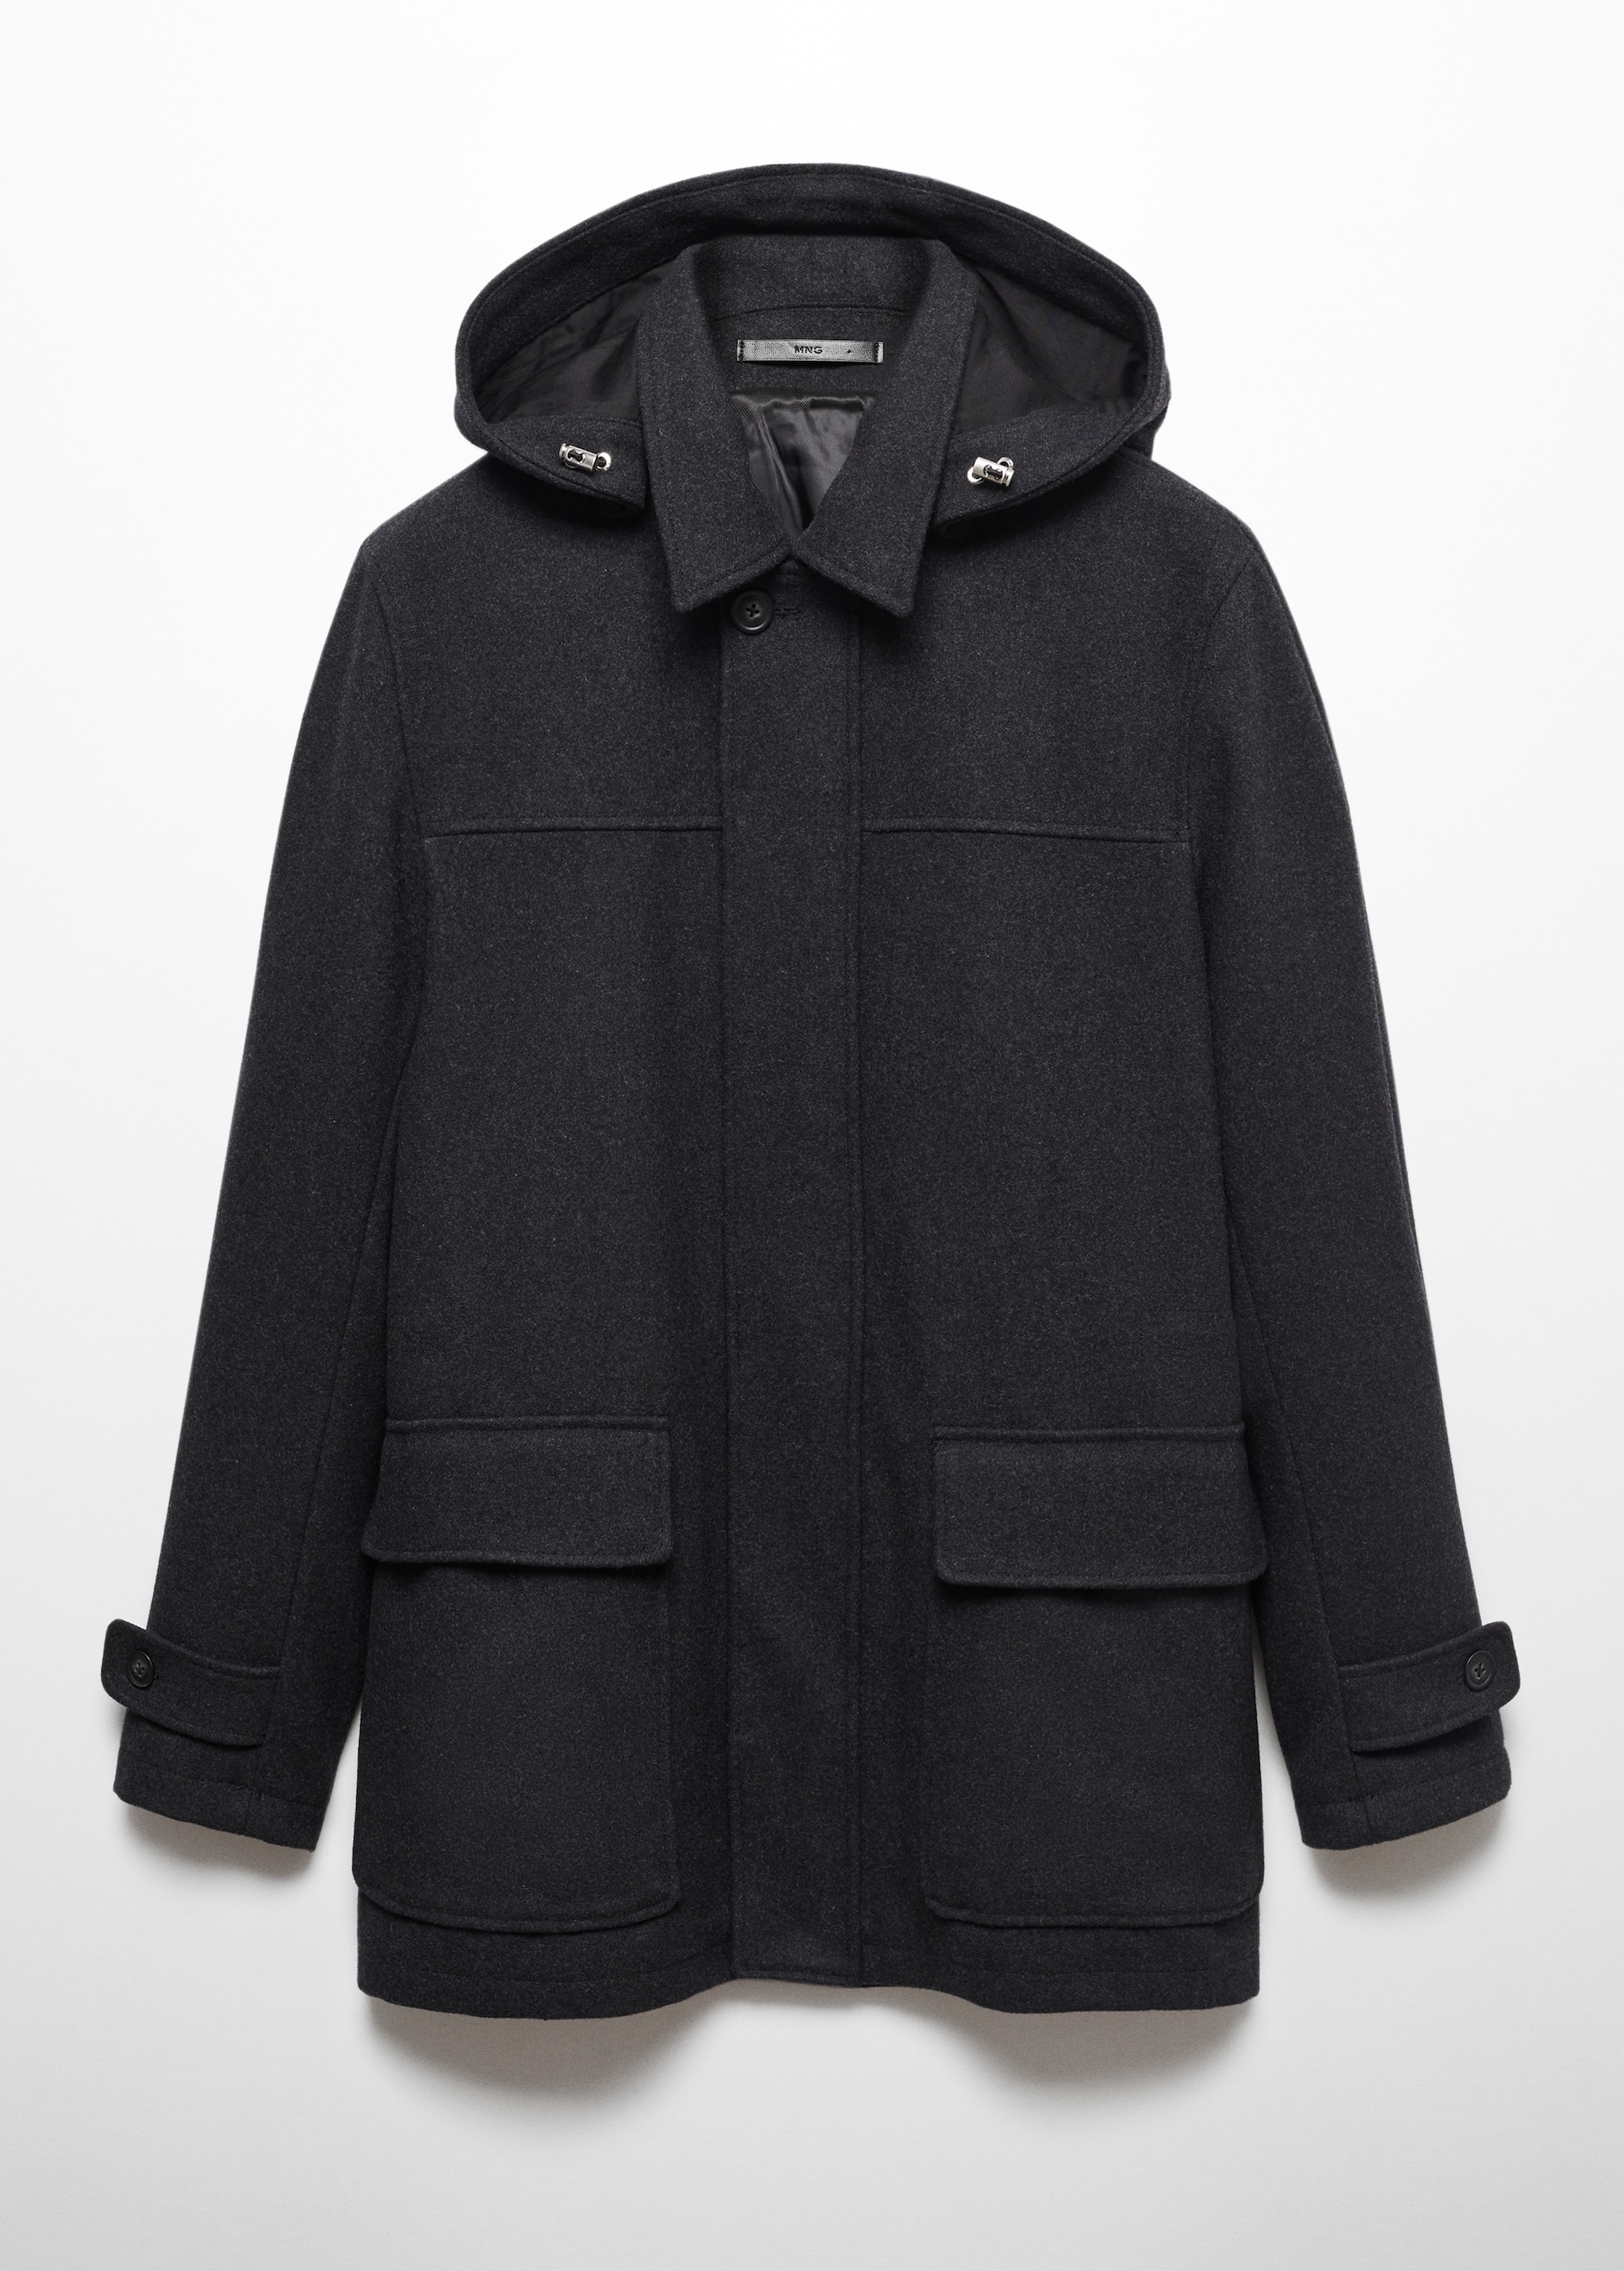 Пальто из шерсти со съемным капюшоном - Изделие без модели